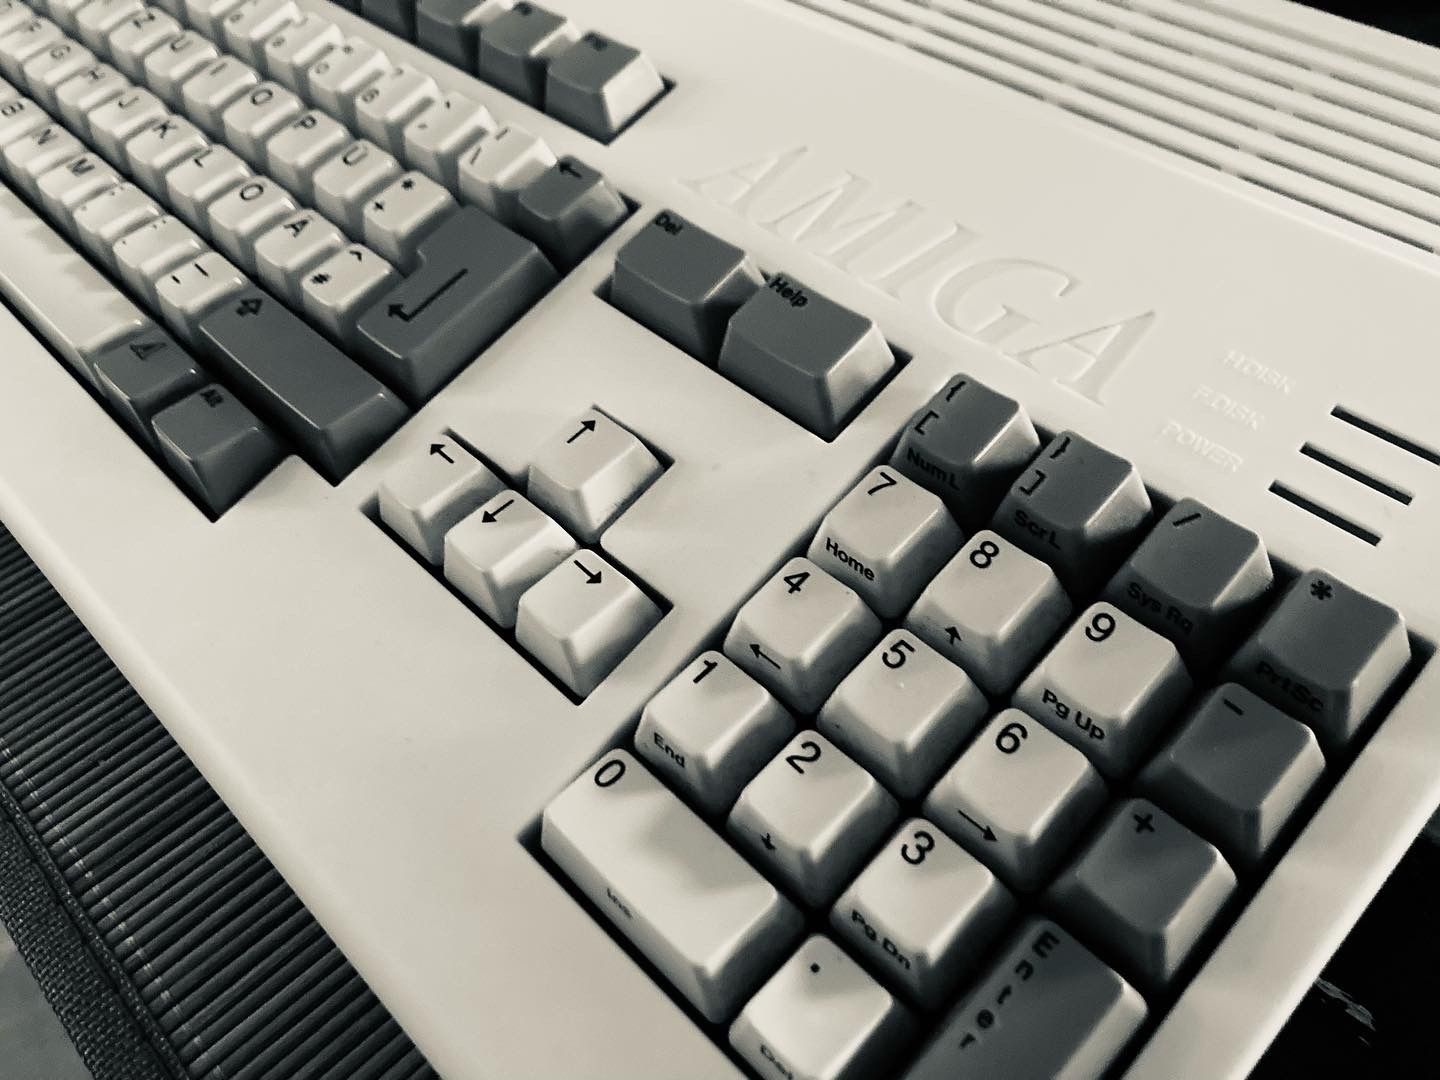 Amiga 1200 mit Sicht auf den Nummernblock und die LEDs